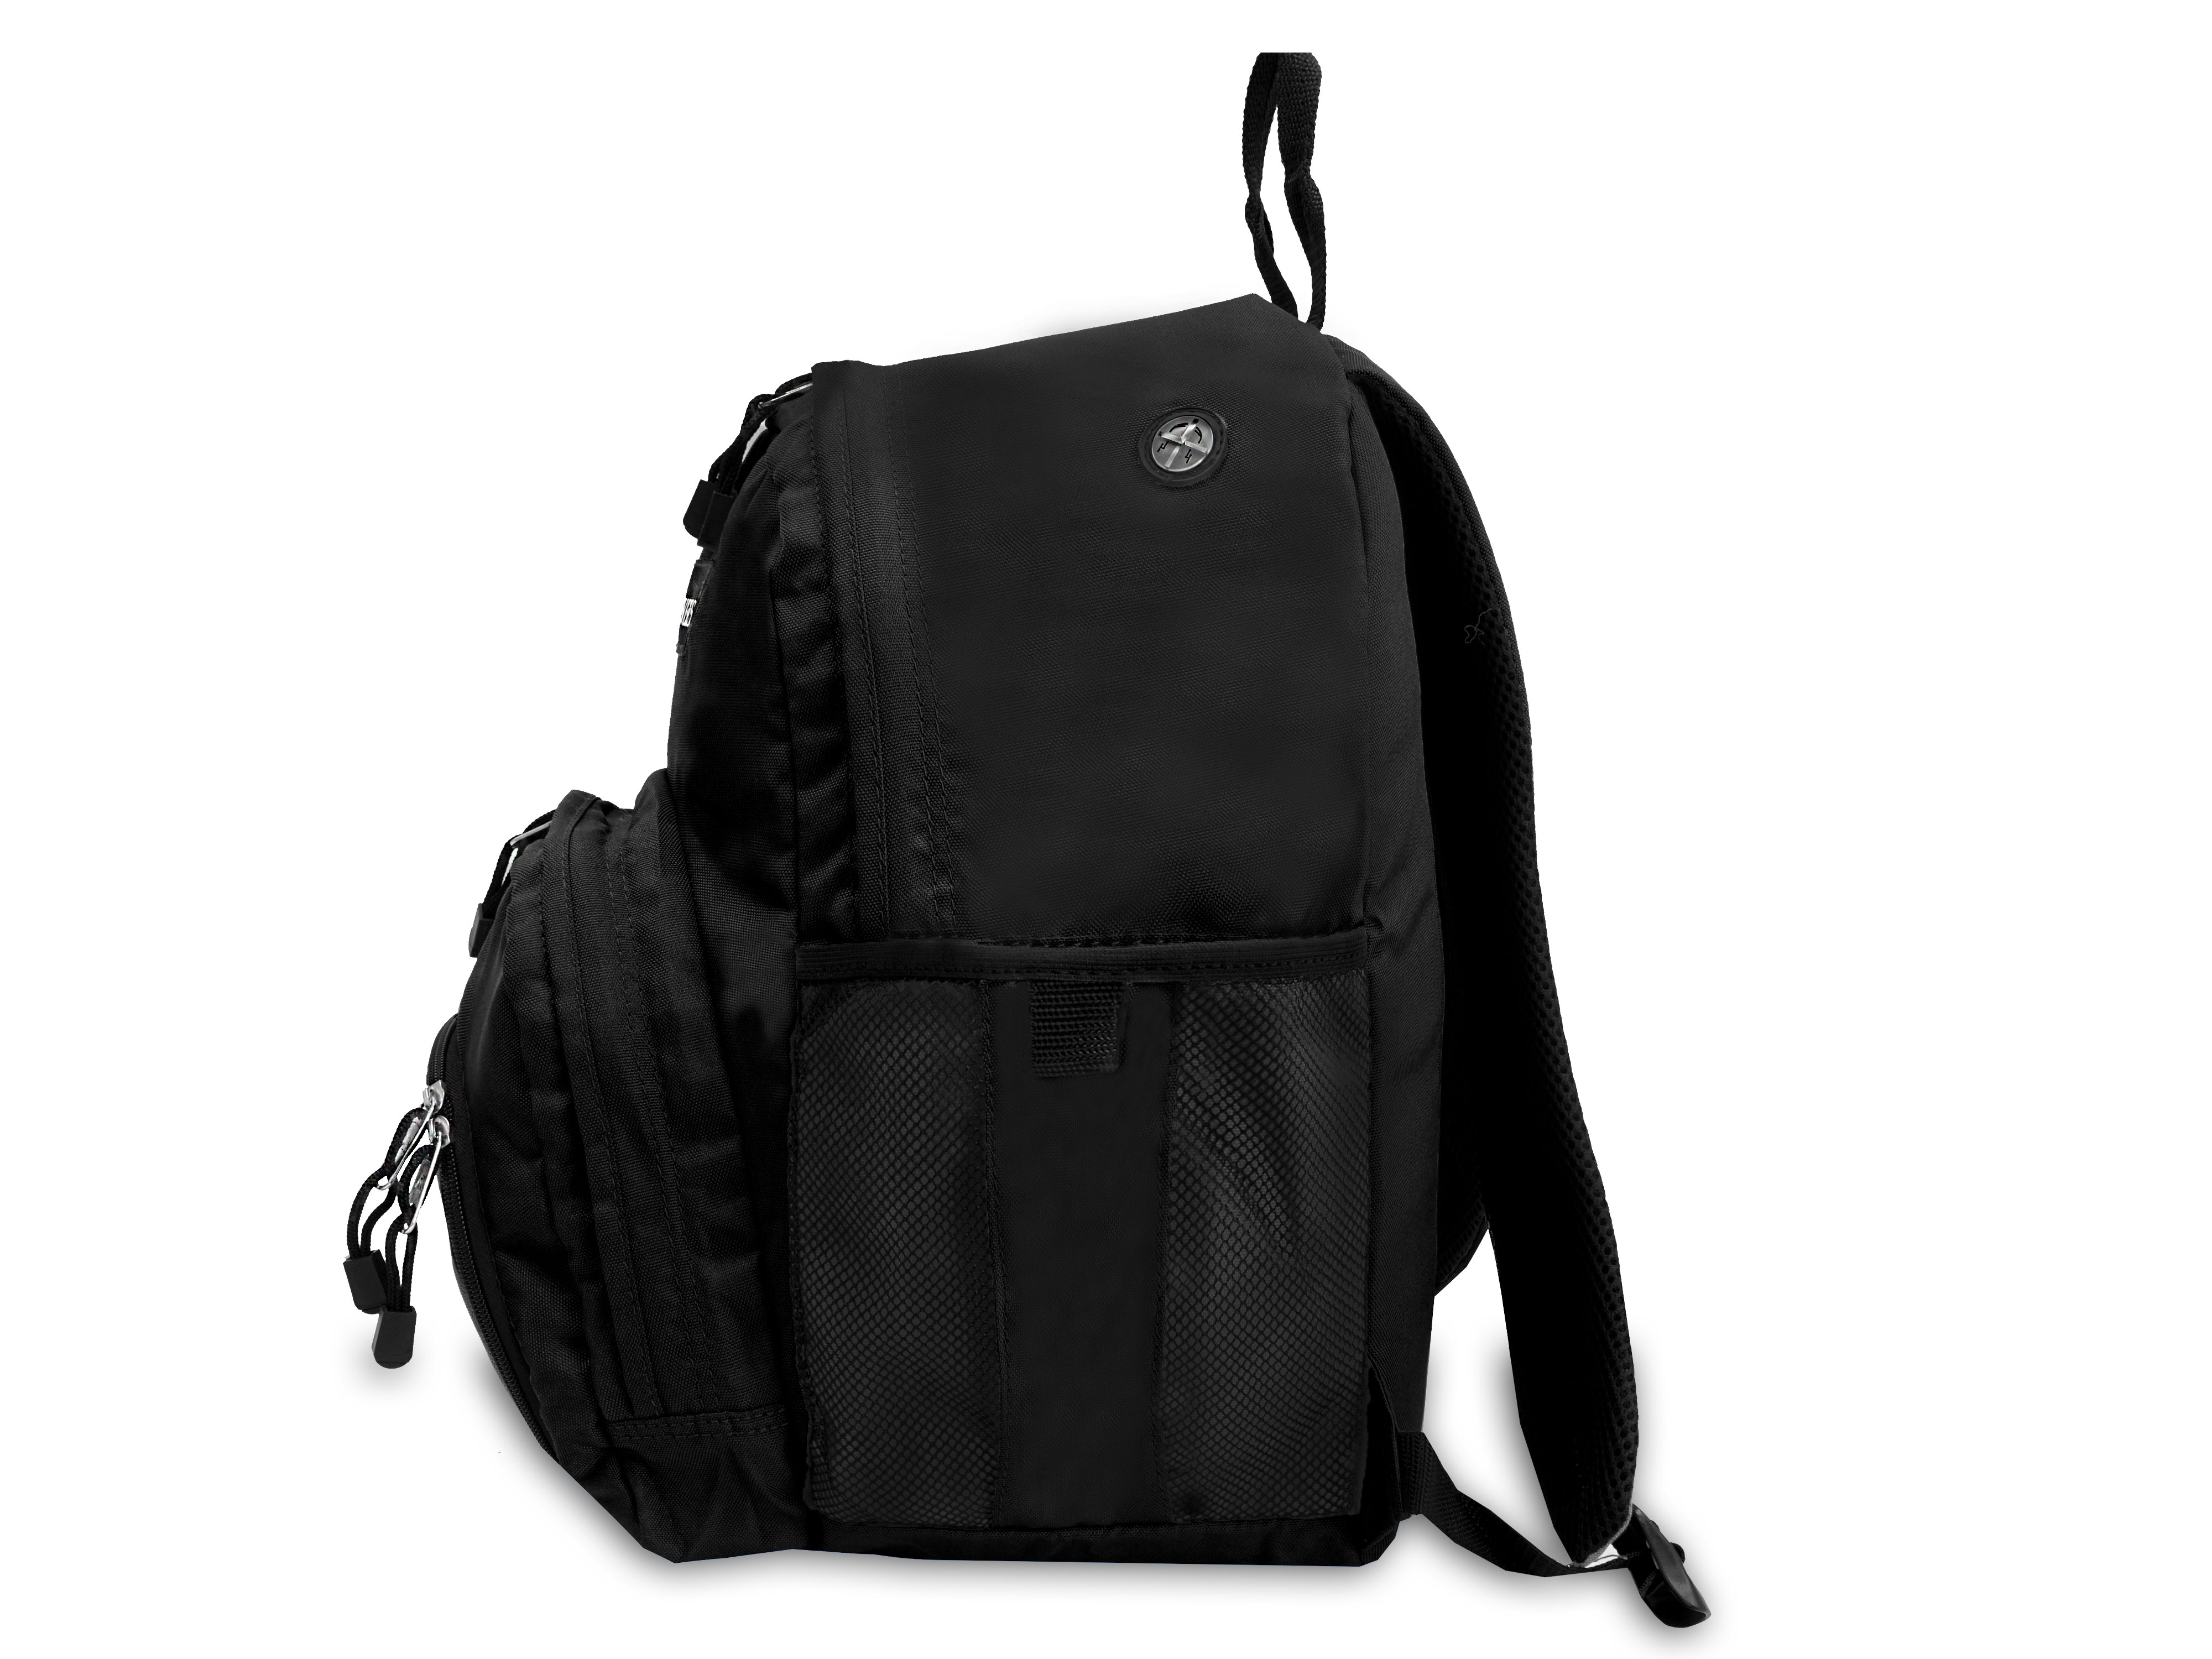 Everest Backpack, Black - image 4 of 4